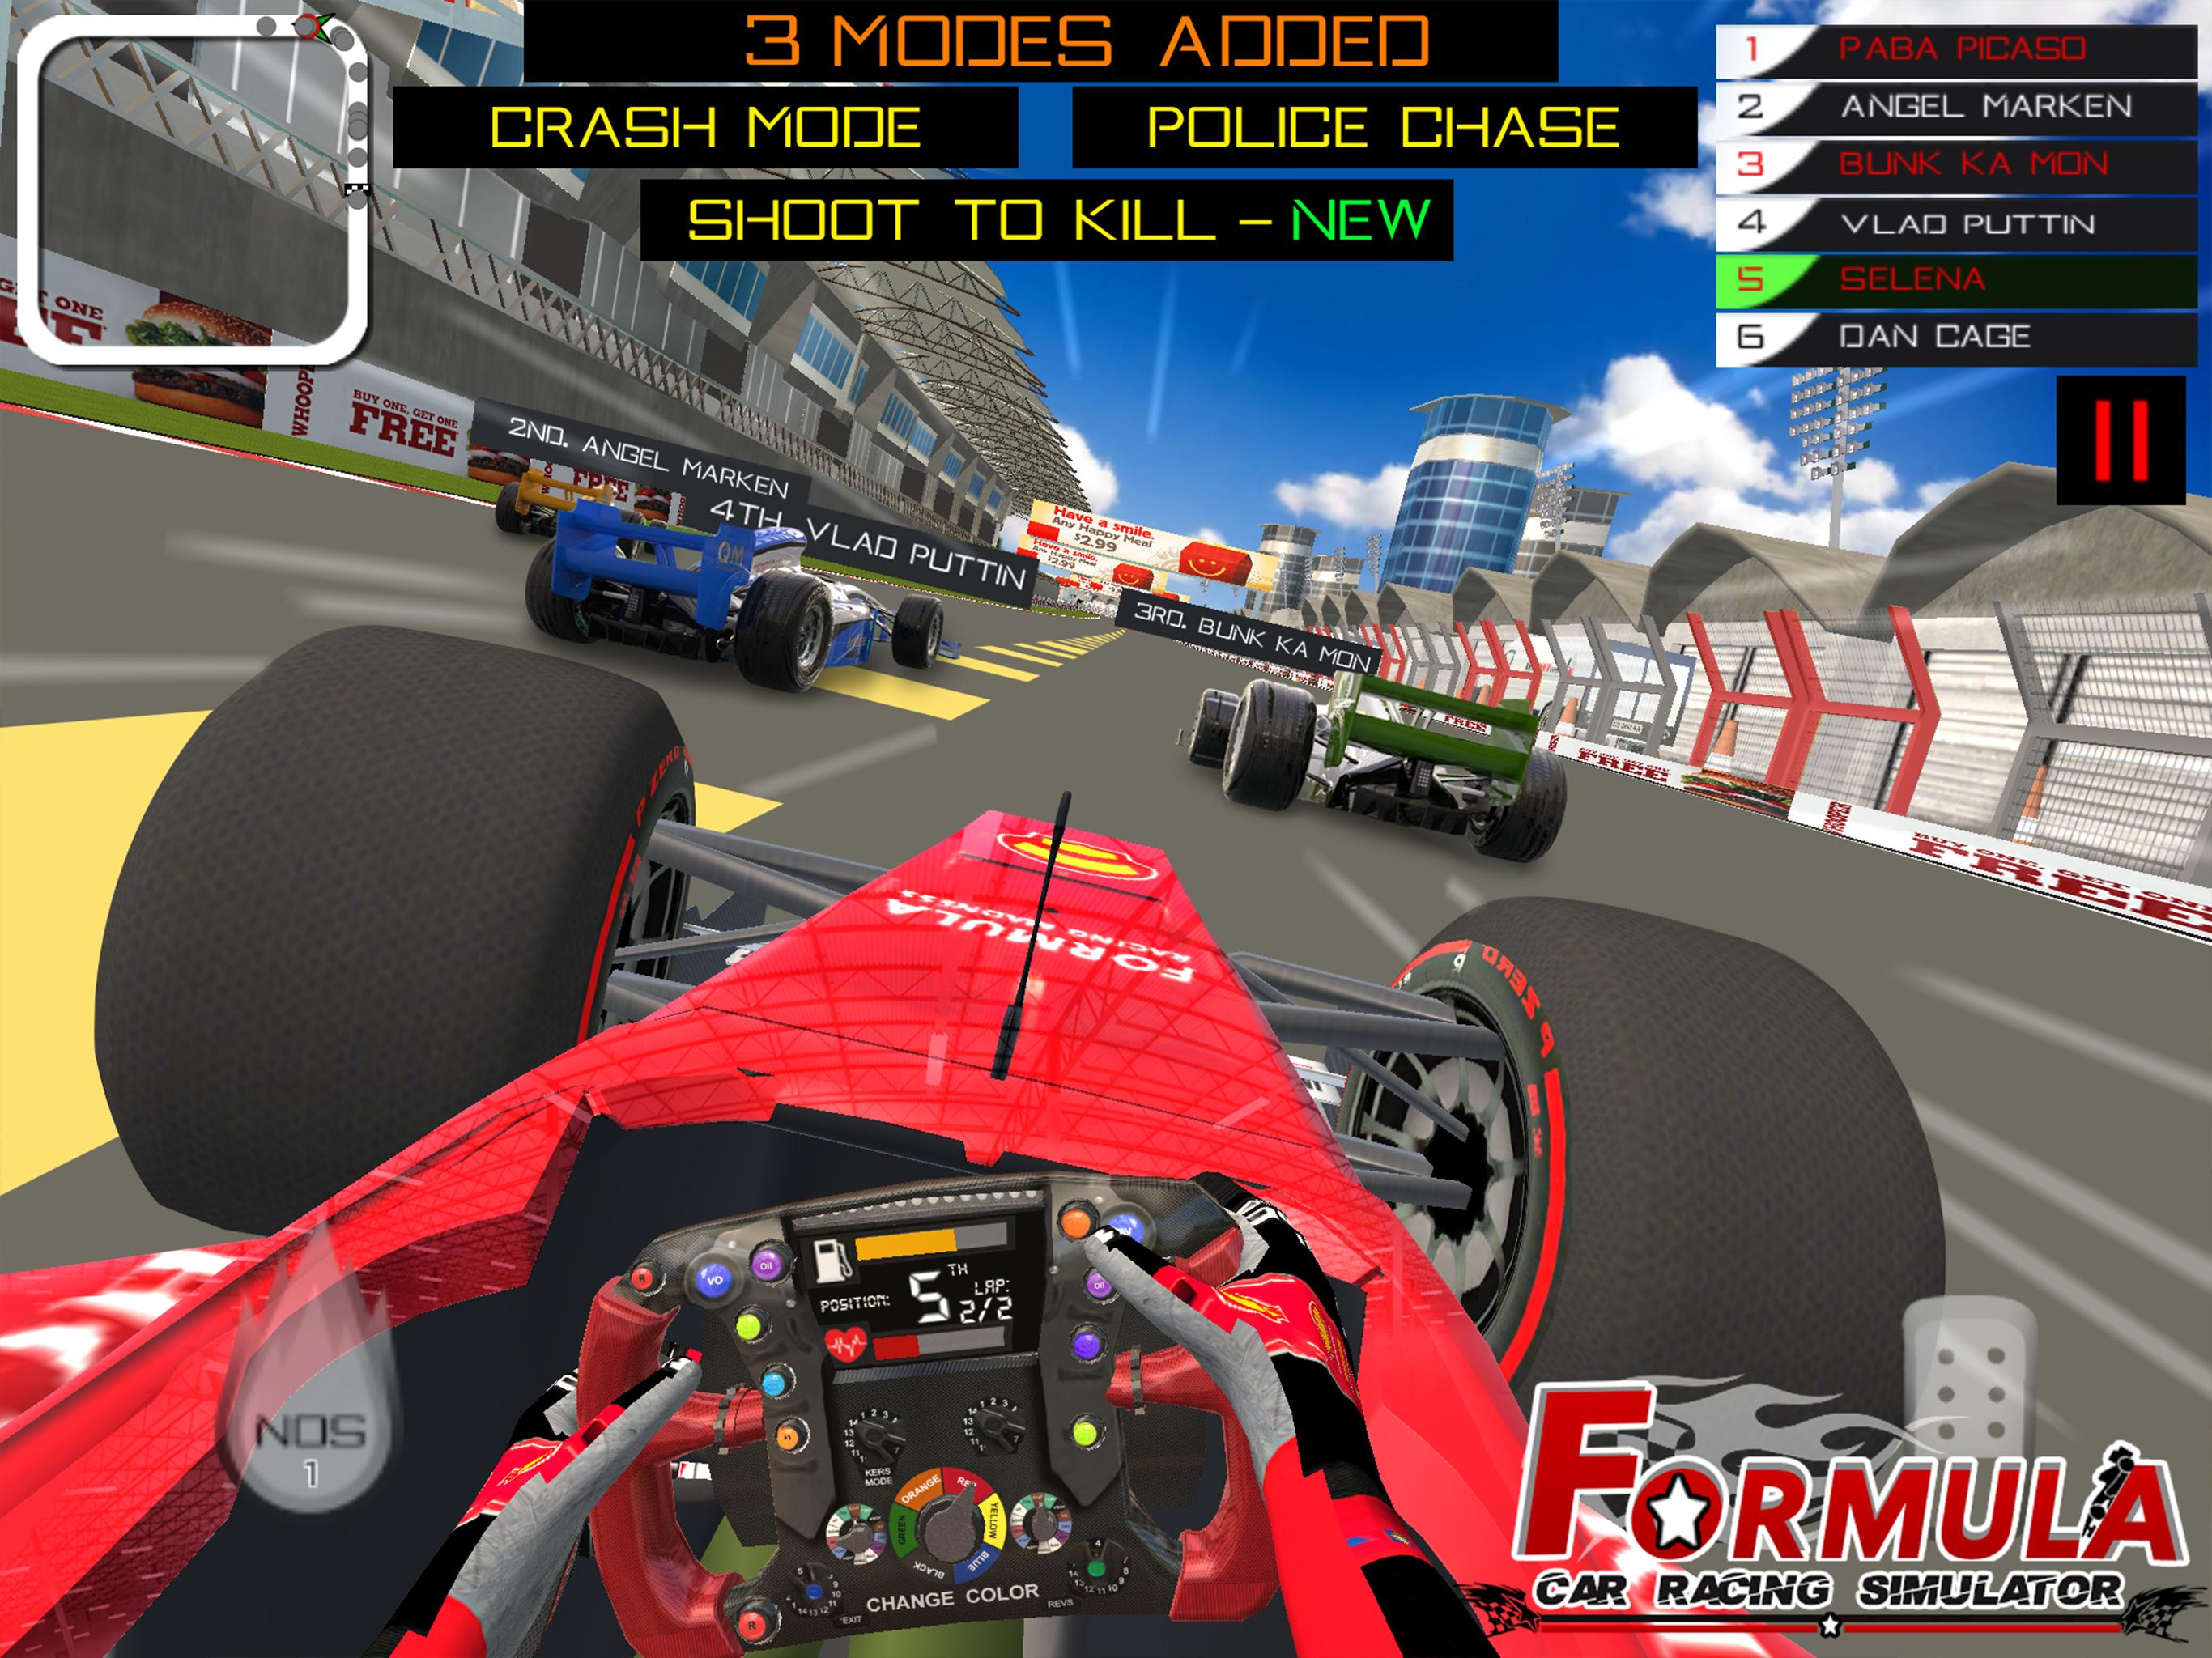 Formula Car Racing Simulator mobile No 1 Race game 16 Screenshot 7